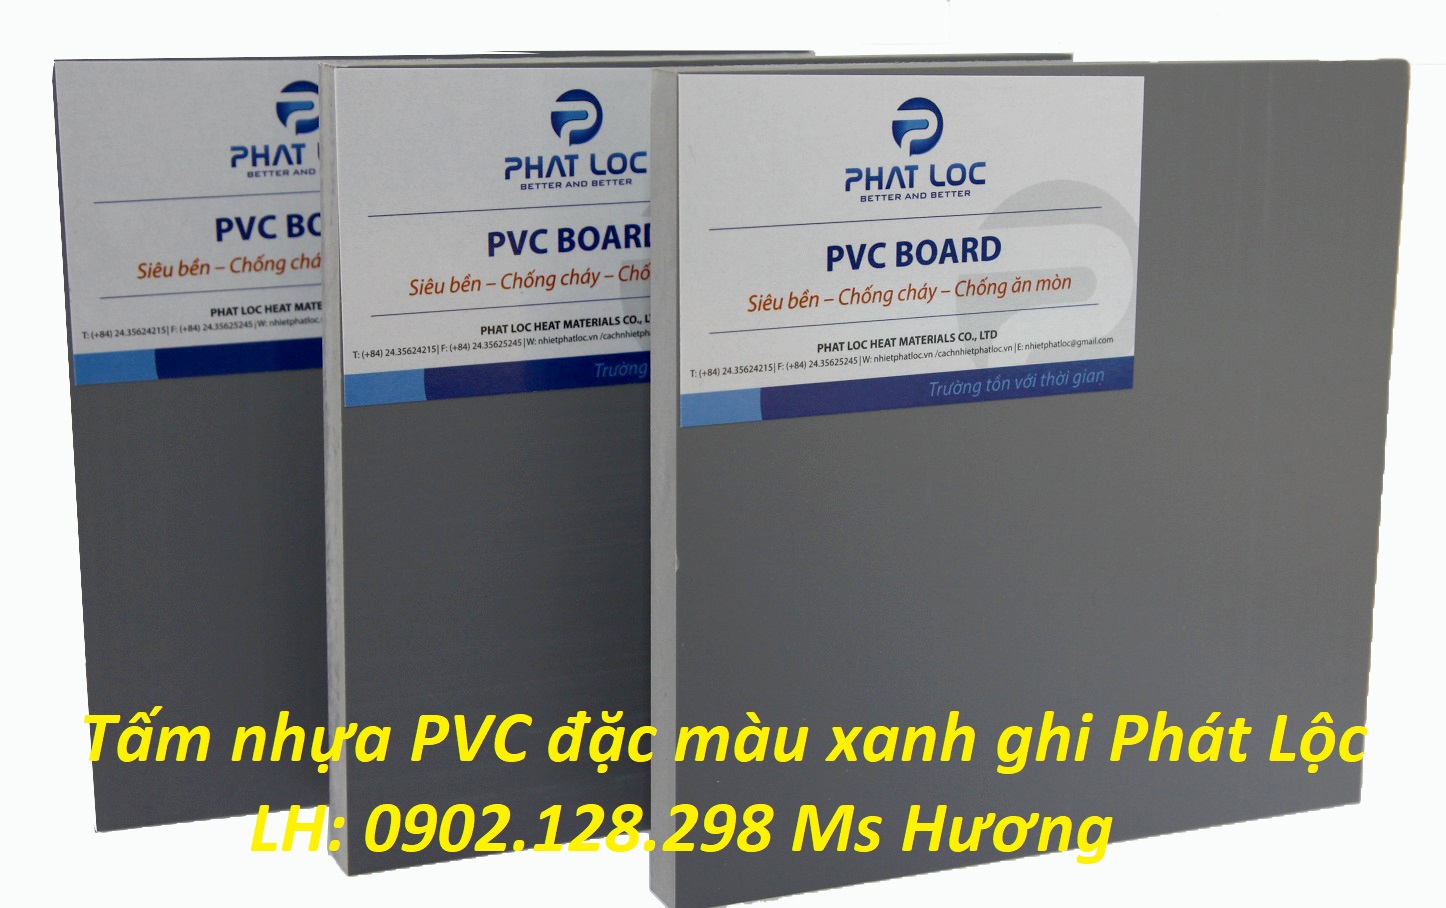 Tấm nhựa PVC đặc - Ứng dụng làm mâm bàn chải công nghiệp